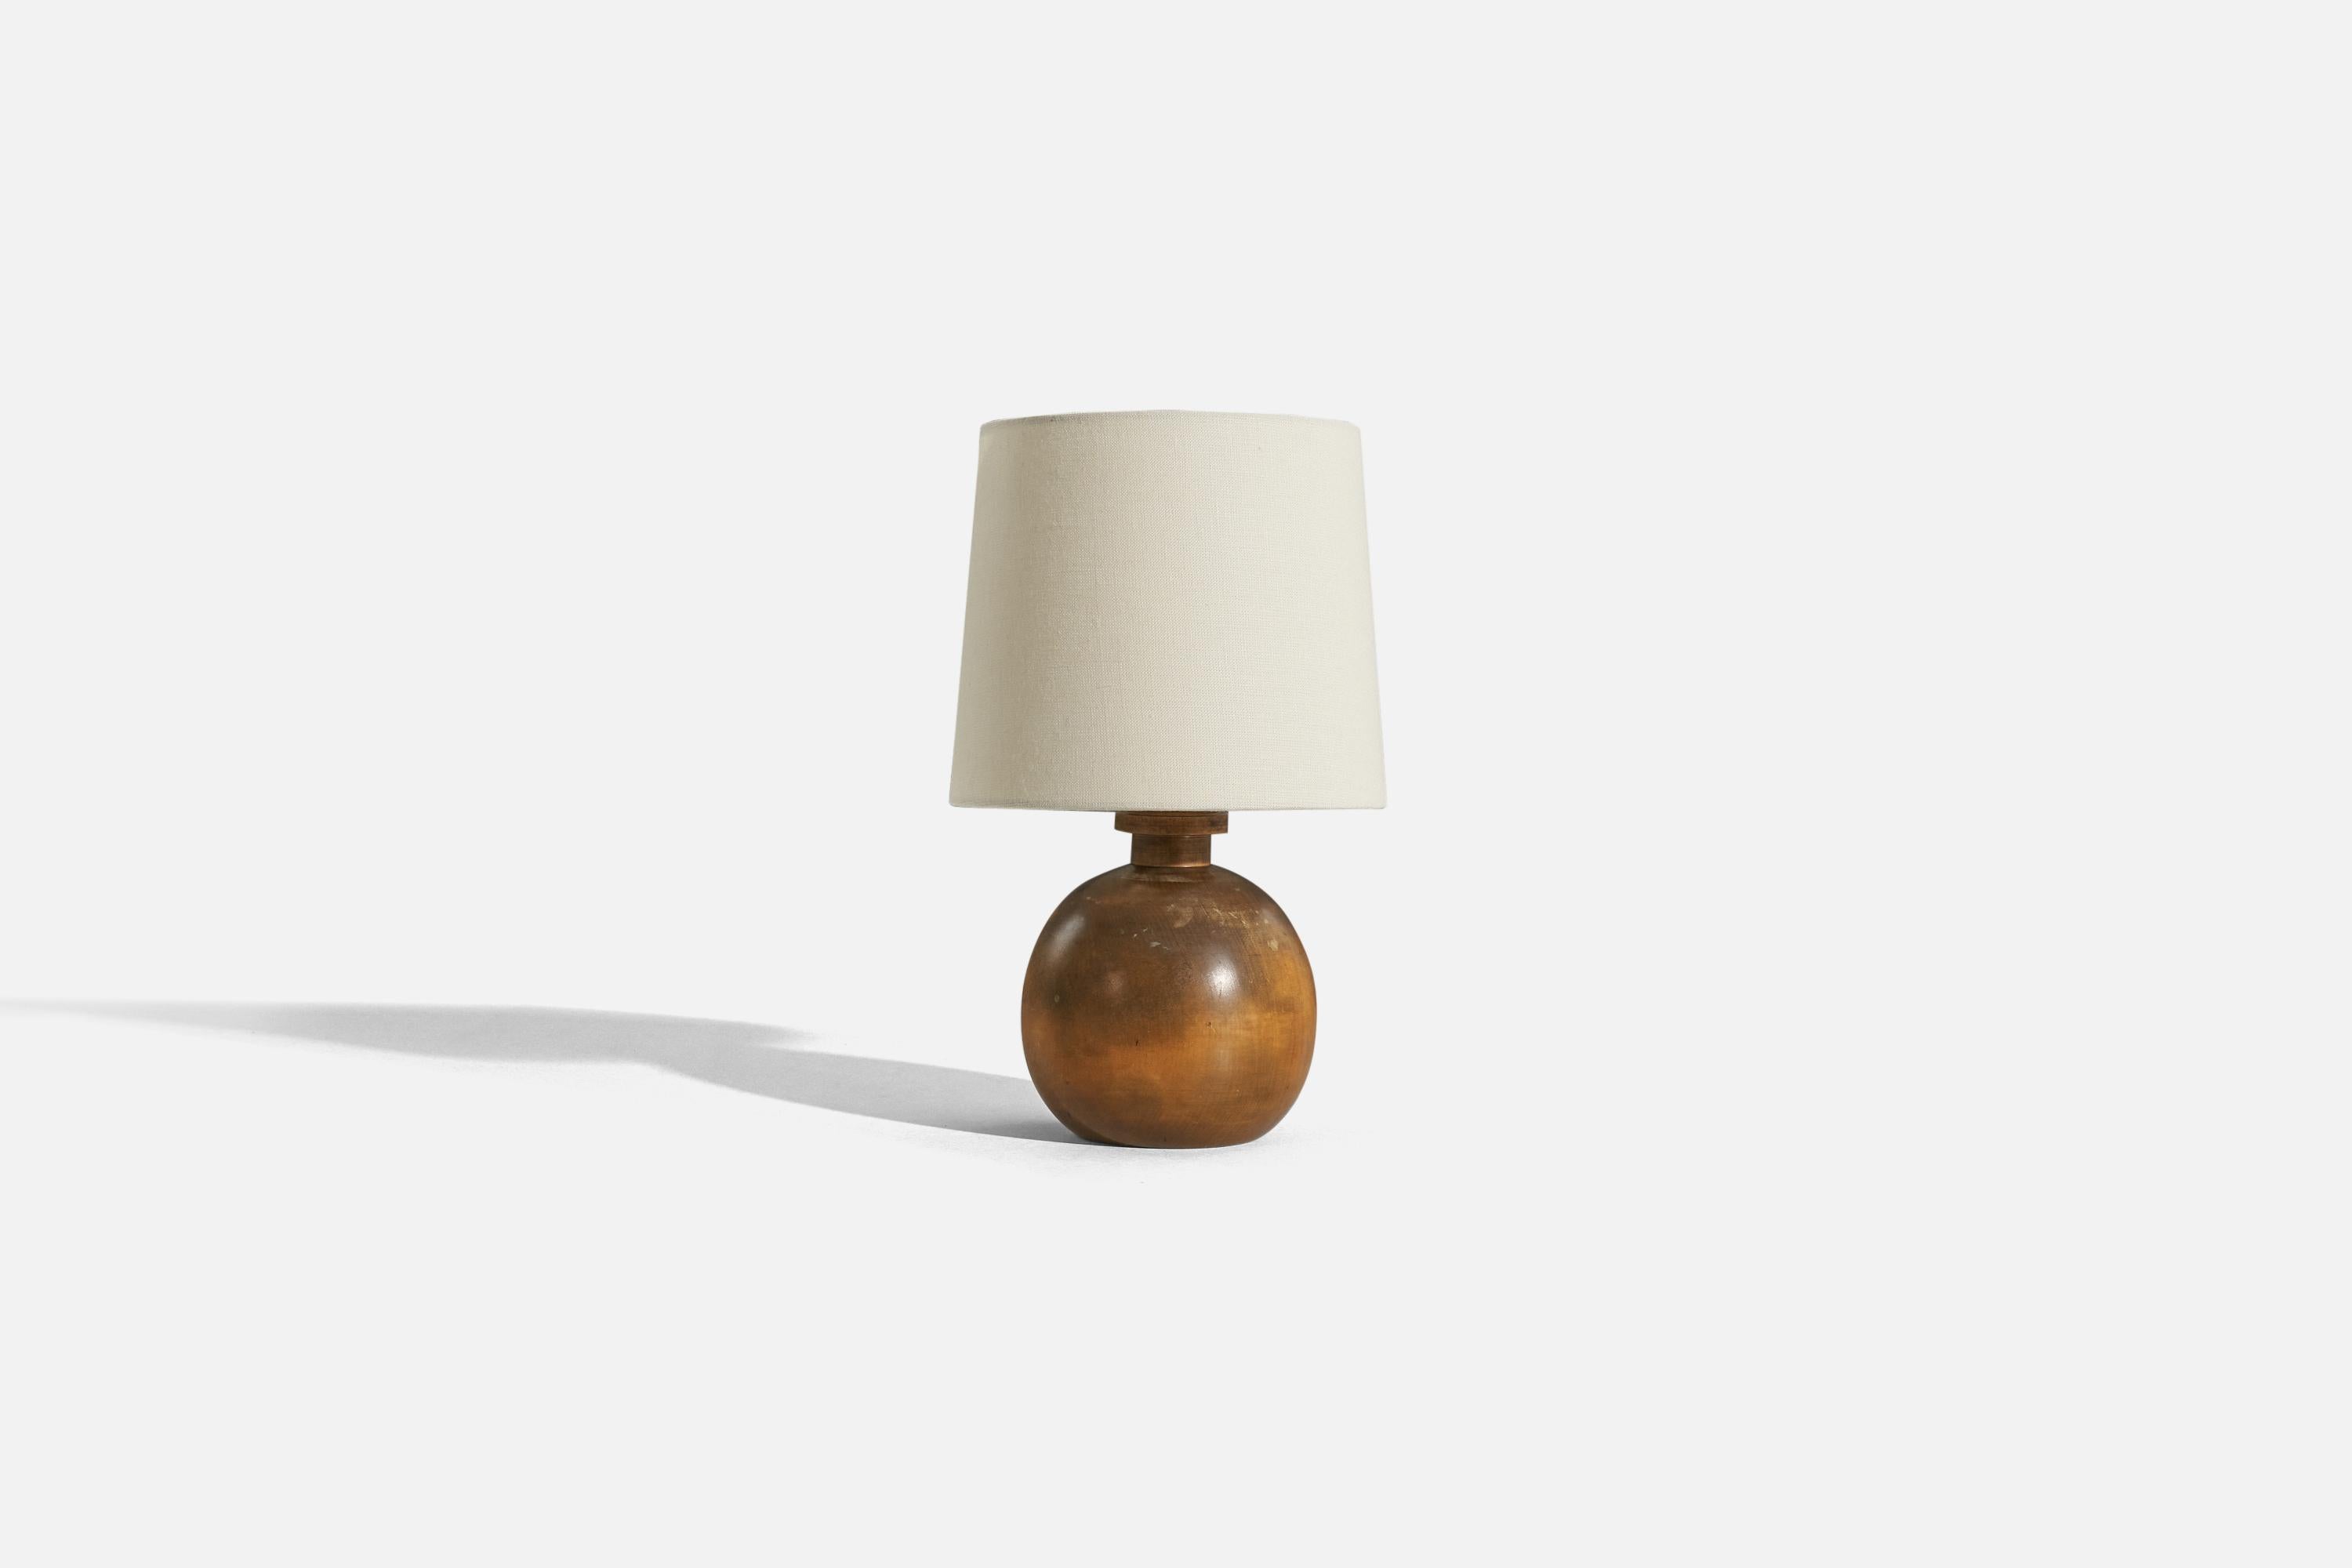 Lampe de table en bois conçue et produite en Suède, c. 1930-1940. 

Vendu sans abat-jour. 
Dimensions de la lampe (pouces) : 9,125 x 5,625 x 5,625 (H x L x P)
Dimensions de l'abat-jour (pouces) : 7 x 8 x 7 (T x B x H)
Dimensions de la lampe